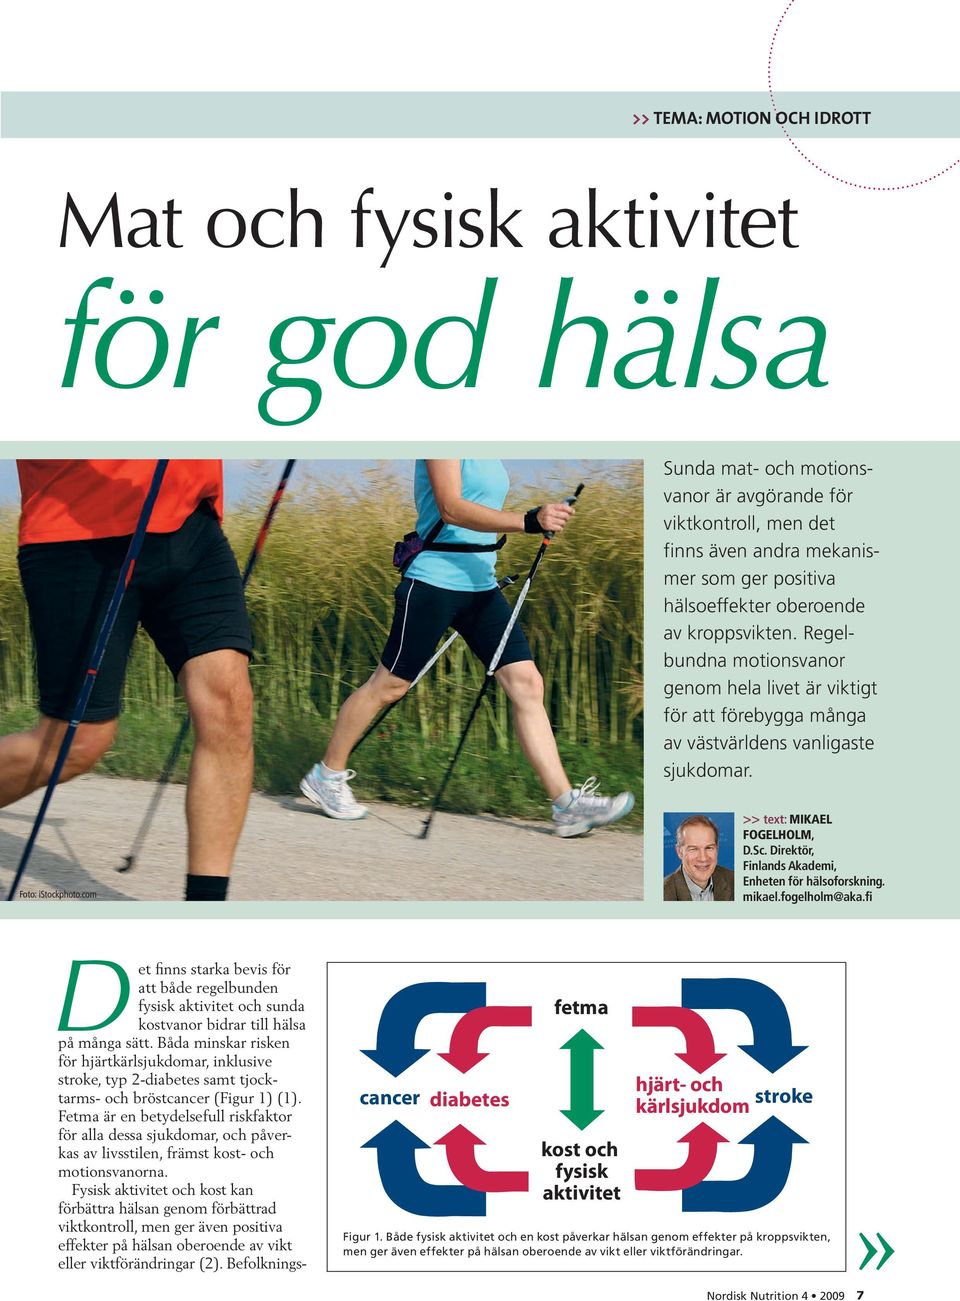 Direktör, Finlands Akademi, Enheten för hälsoforskning. mikael.fogelholm@aka.fi Det finns starka bevis för att både regelbunden fysisk aktivitet och sunda kostvanor bidrar till hälsa på många sätt.